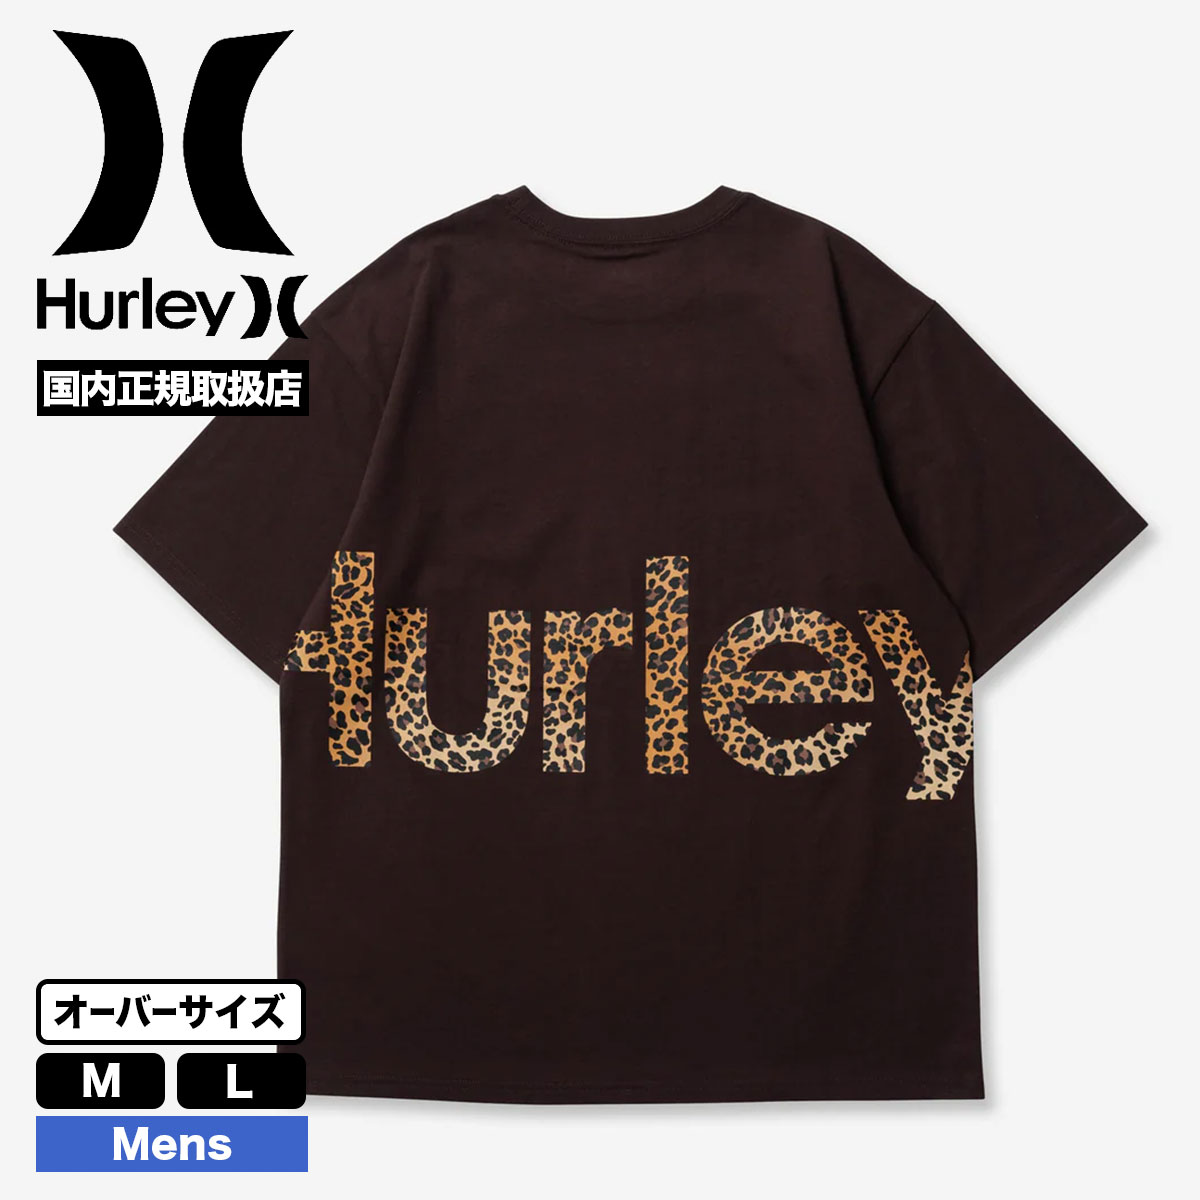 HURLEY ハーレー メンズ 半袖Tシャツ トップス ロゴ レオパード柄 オーバーサイズ 大きめ ...